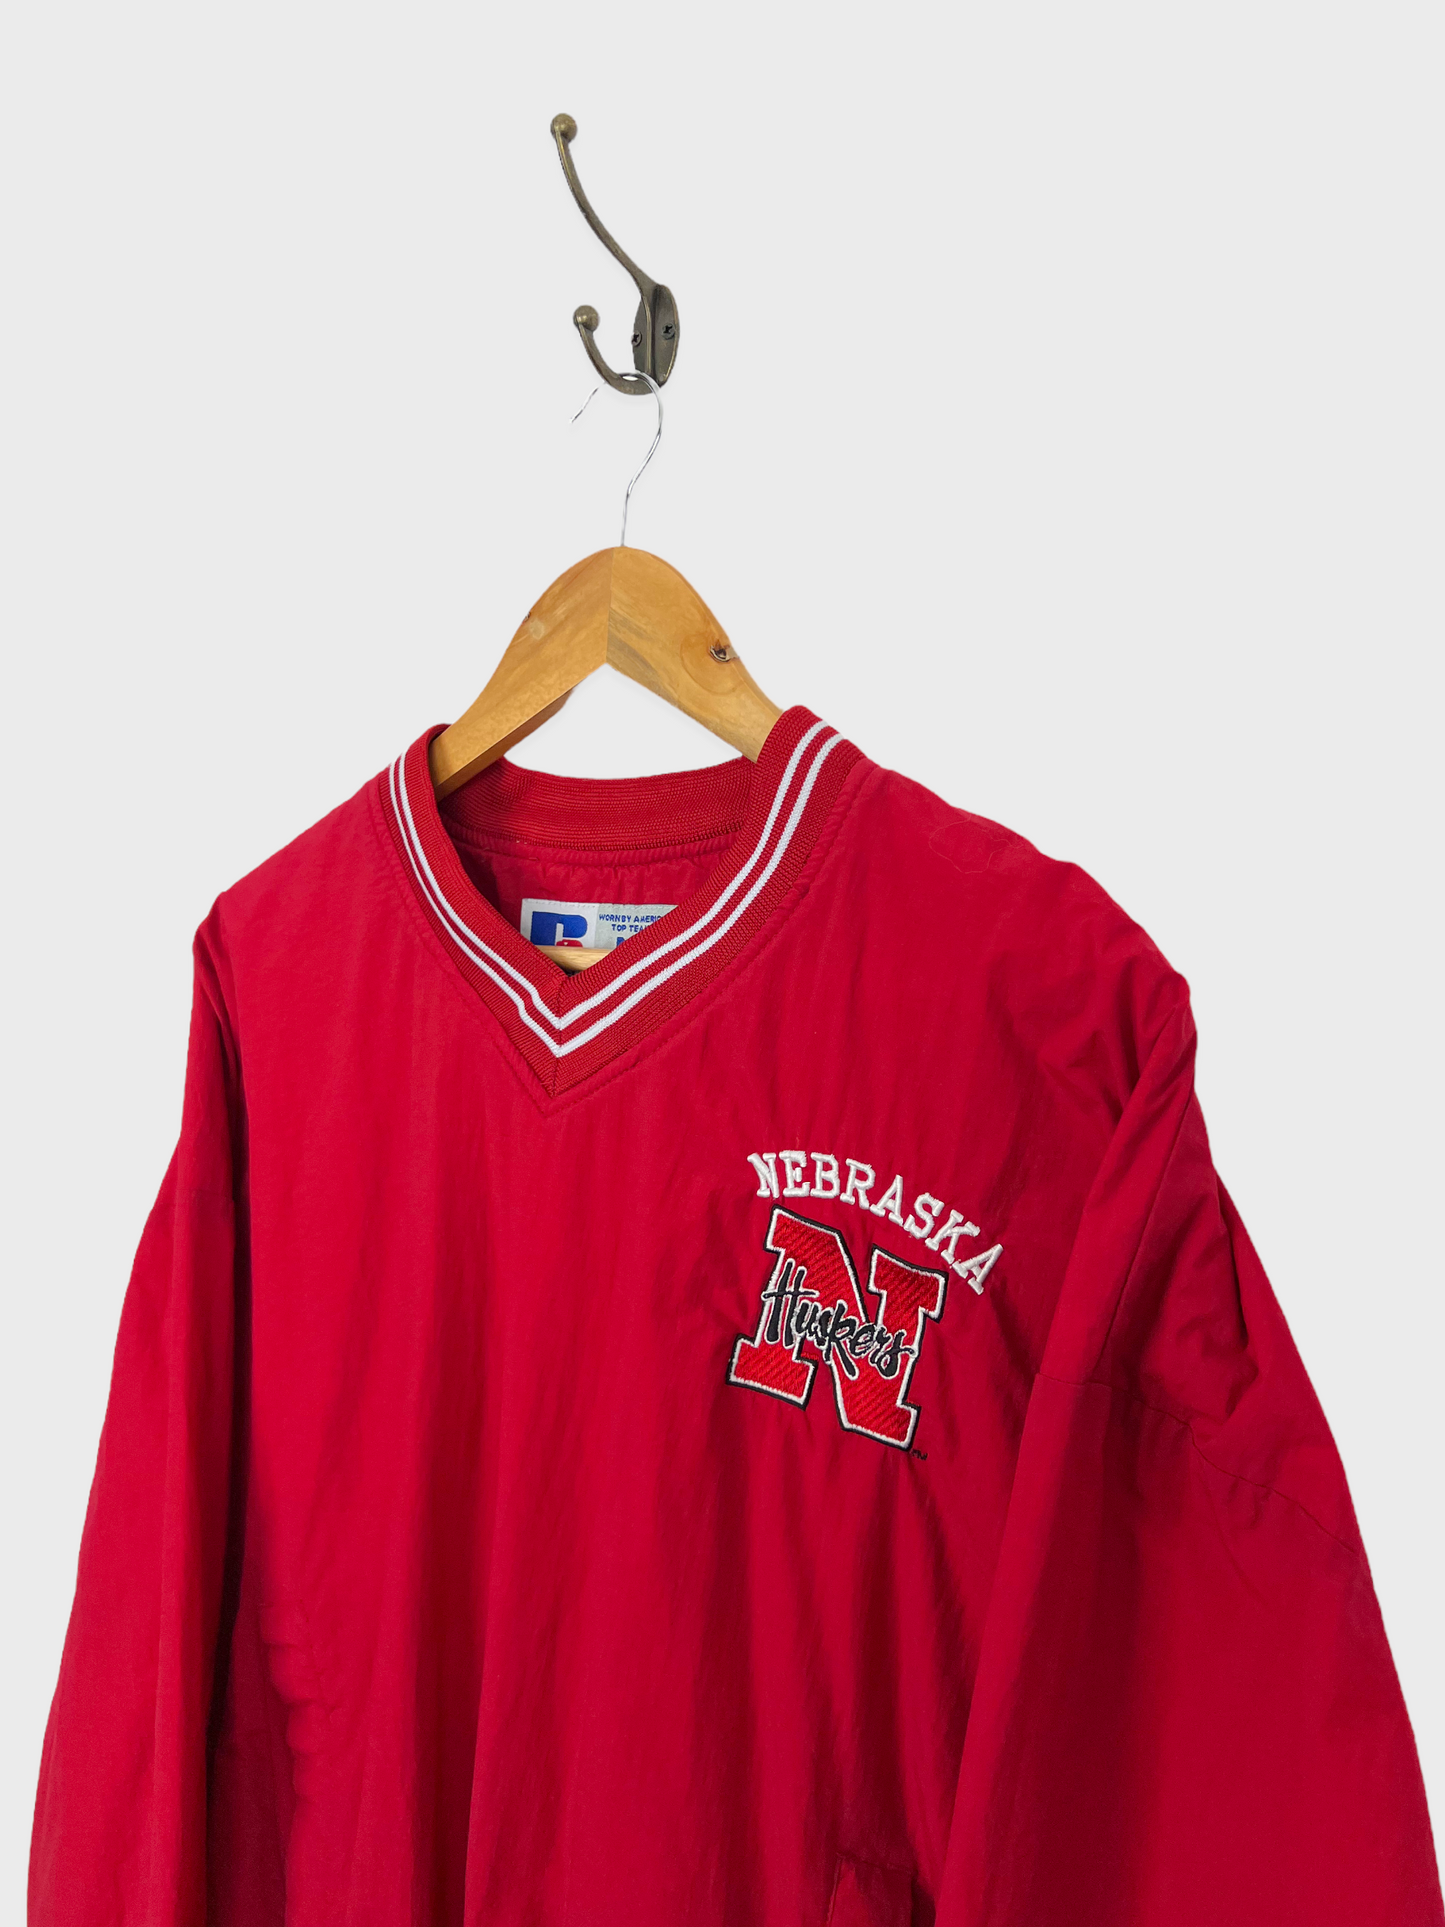 90's Nebraska Huskers Embroidered Vintage Pullover Size 10